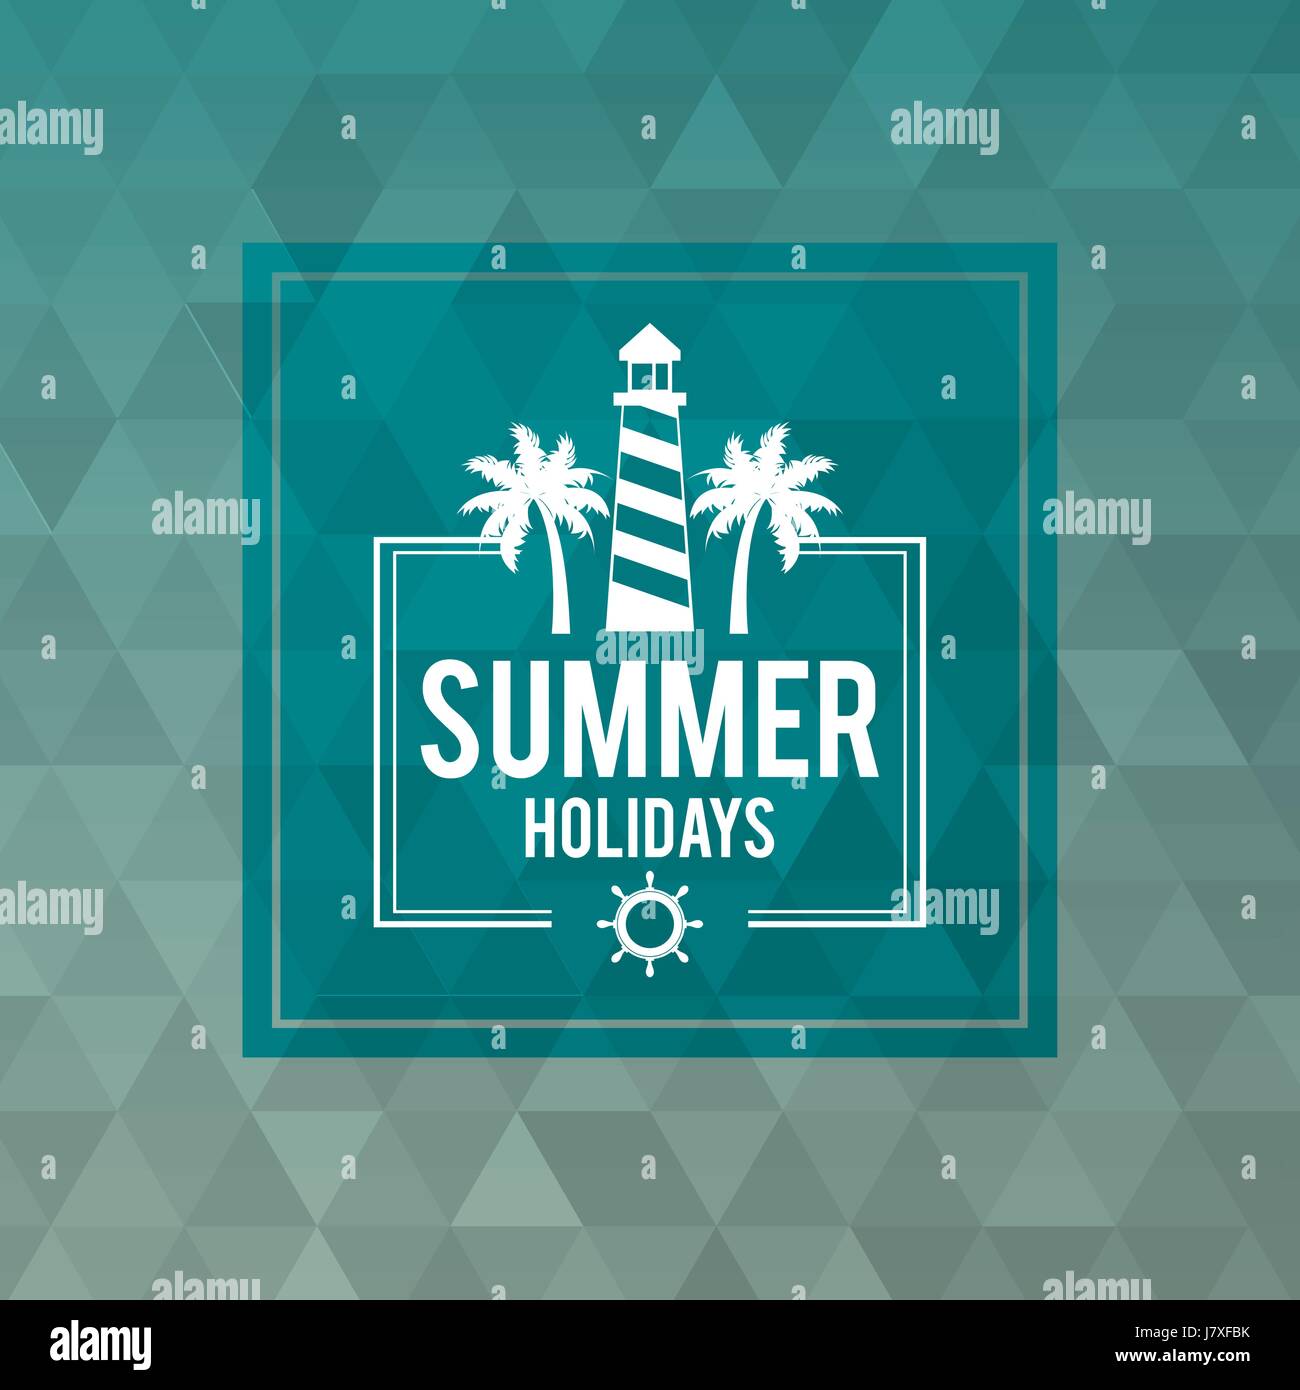 Abstract sfondo poligonale con cornice quadrata di testo logo vacanze estive con il faro Illustrazione Vettoriale